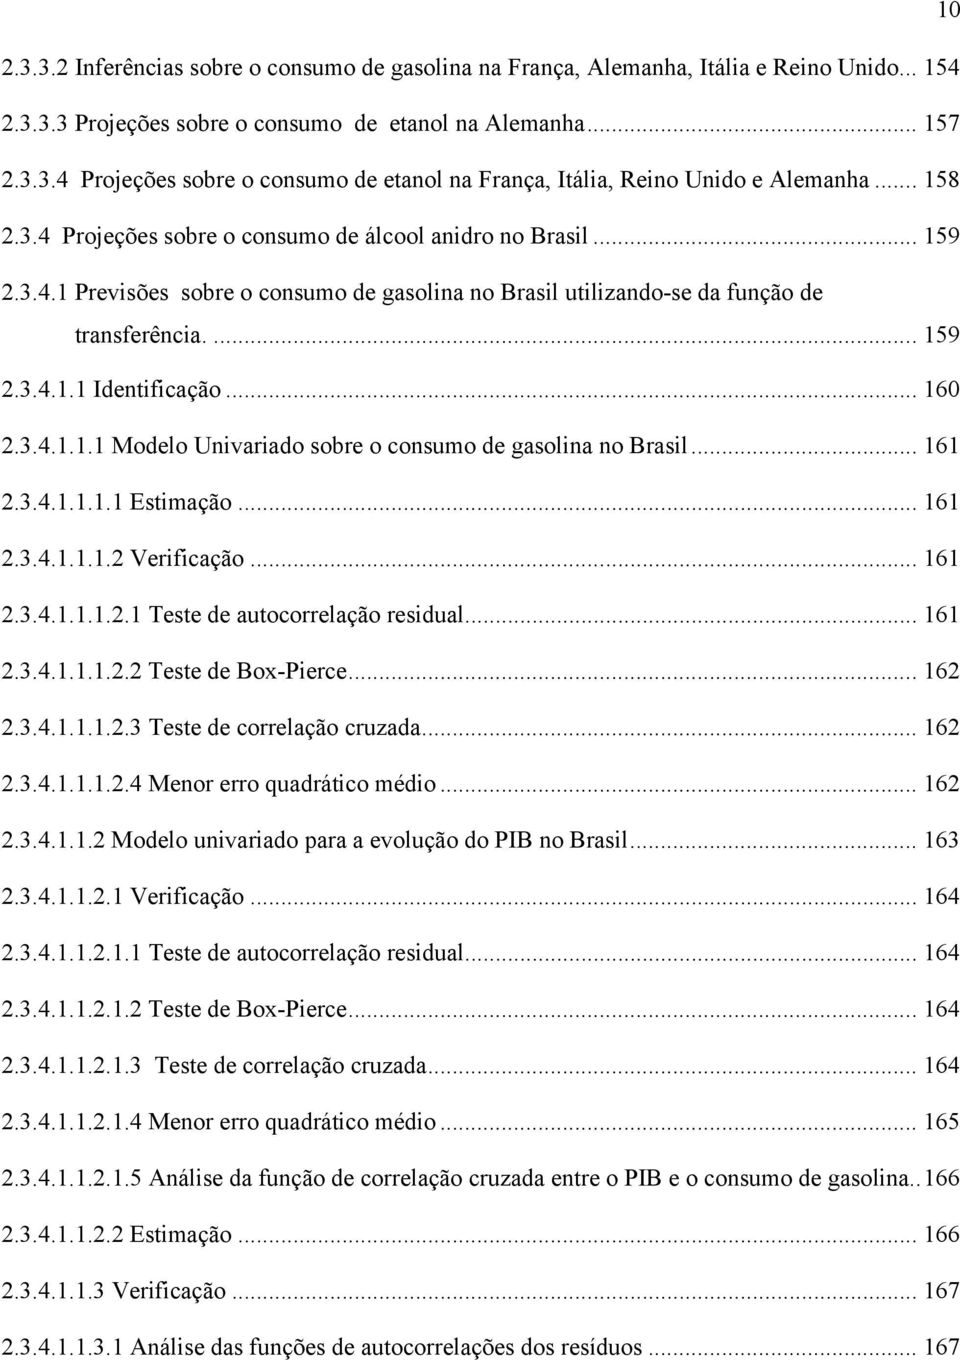 .. 160 2.3.4.1.1.1 Modelo Univariado sobre o consumo de gasolina no Brasil... 161 2.3.4.1.1.1.1 Esimação... 161 2.3.4.1.1.1.2 Verificação... 161 2.3.4.1.1.1.2.1 Tese de auocorrelação residual... 161 2.3.4.1.1.1.2.2 Tese de Box-Pierce.